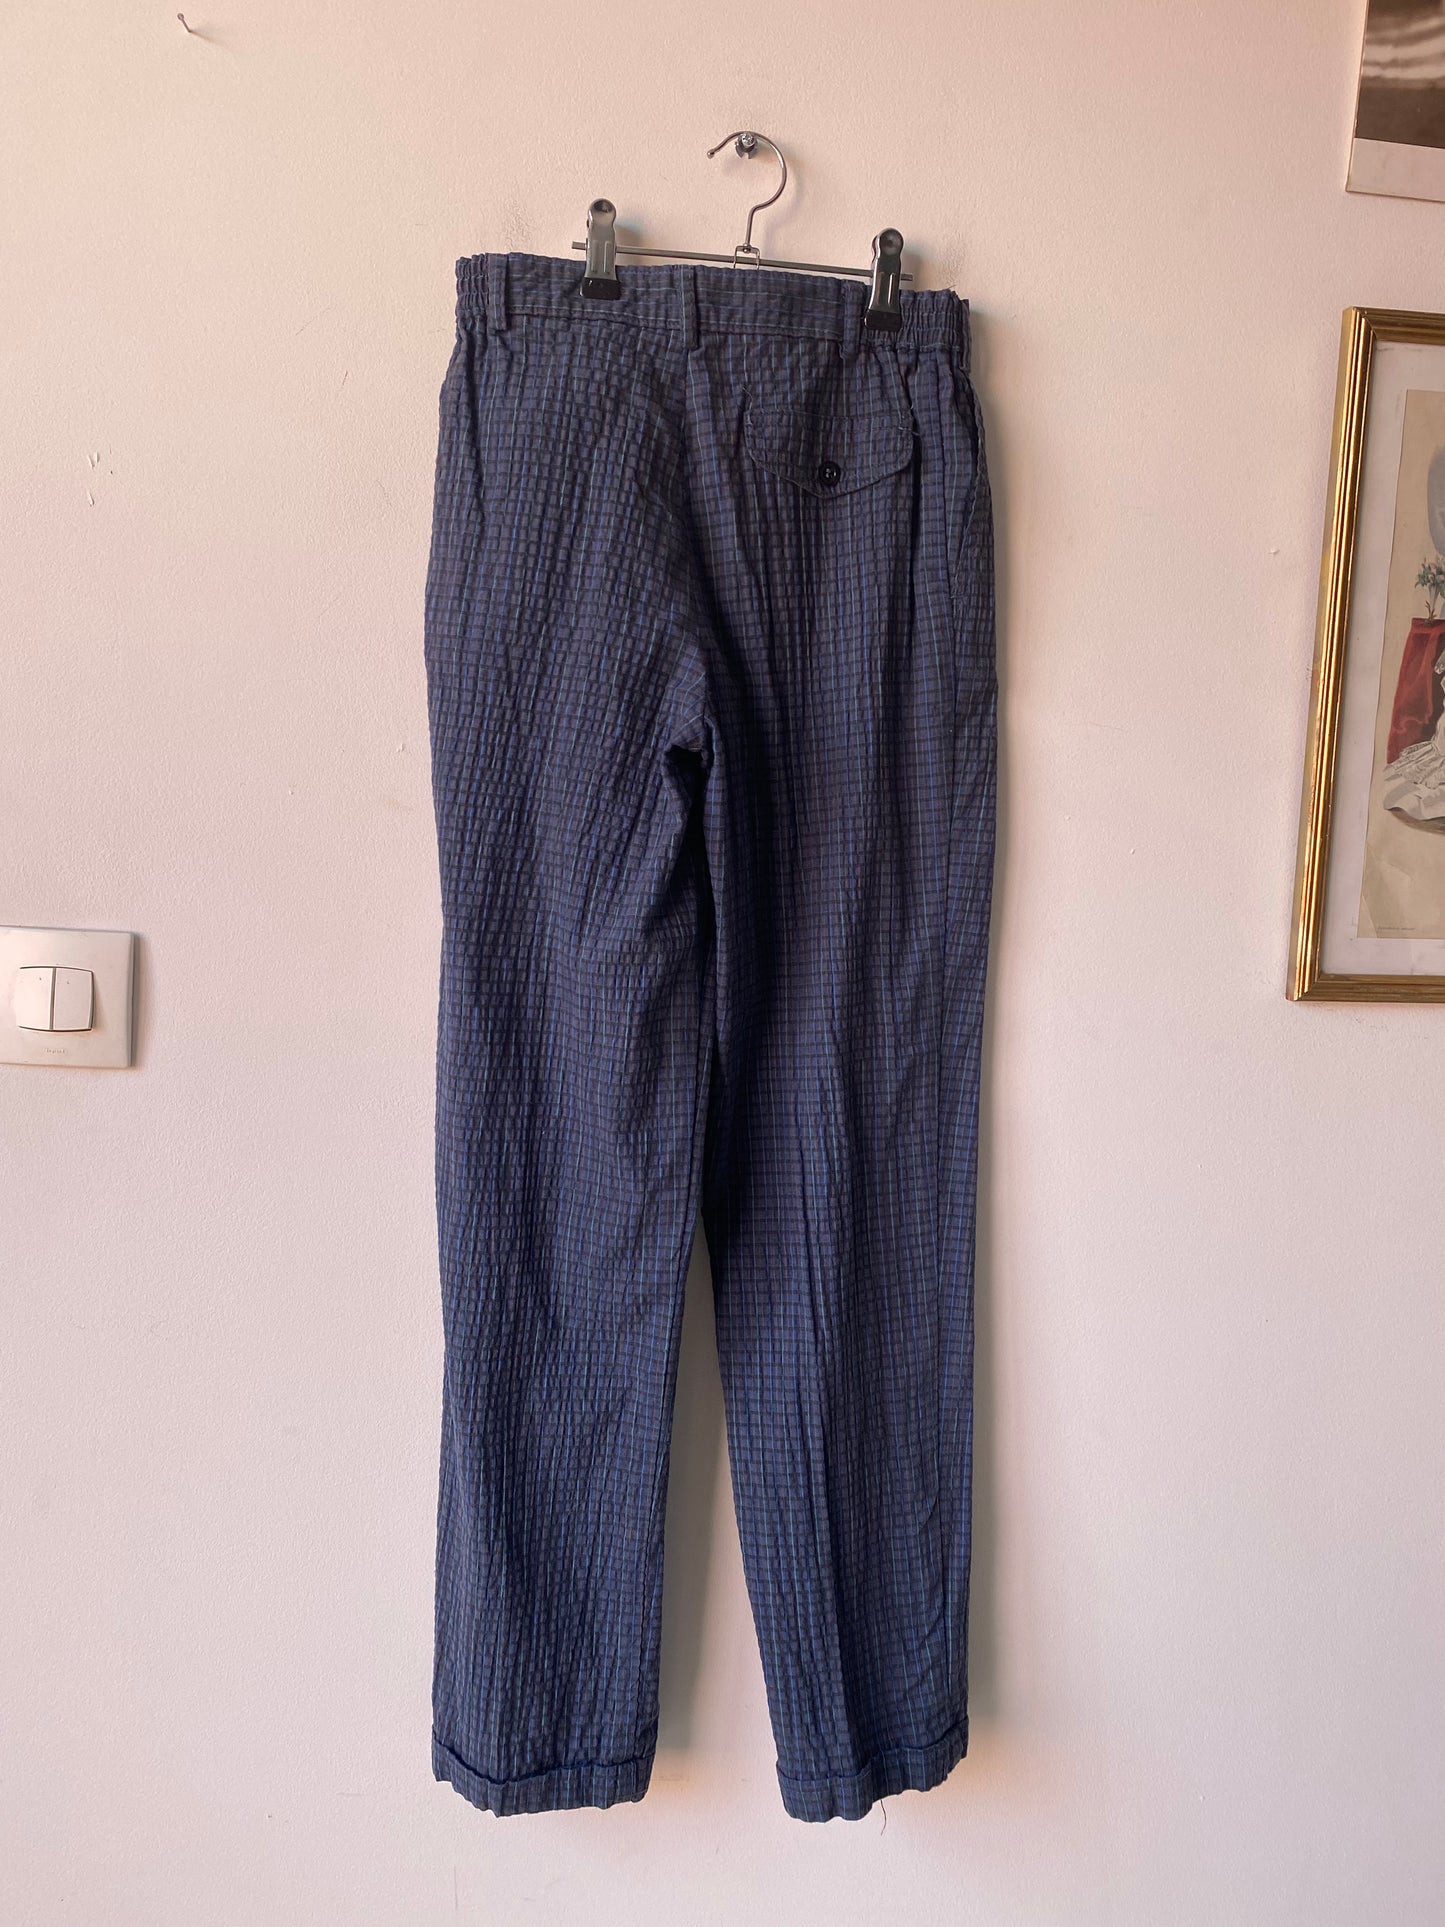 Pantalon bleu 80s